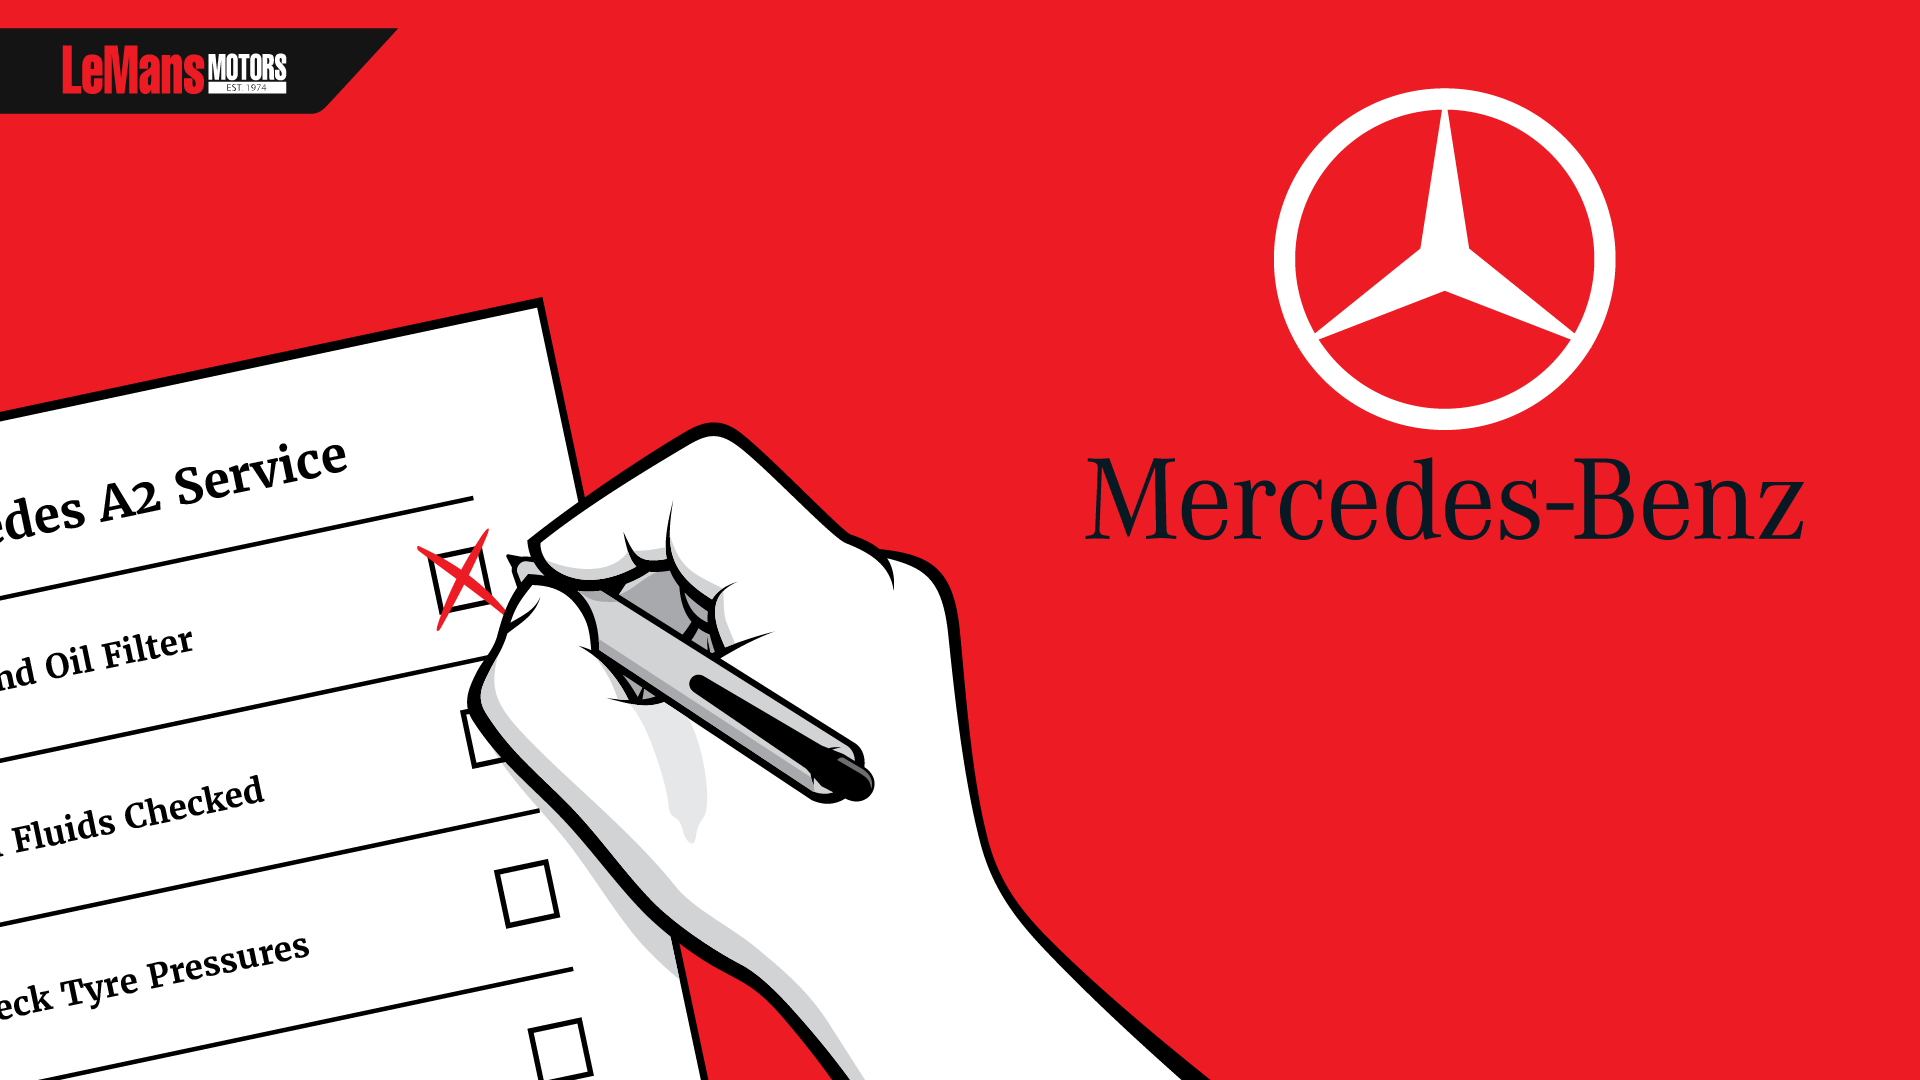 Mercedes Service Schedule Explained: Service A & Service B - LeMans Motors